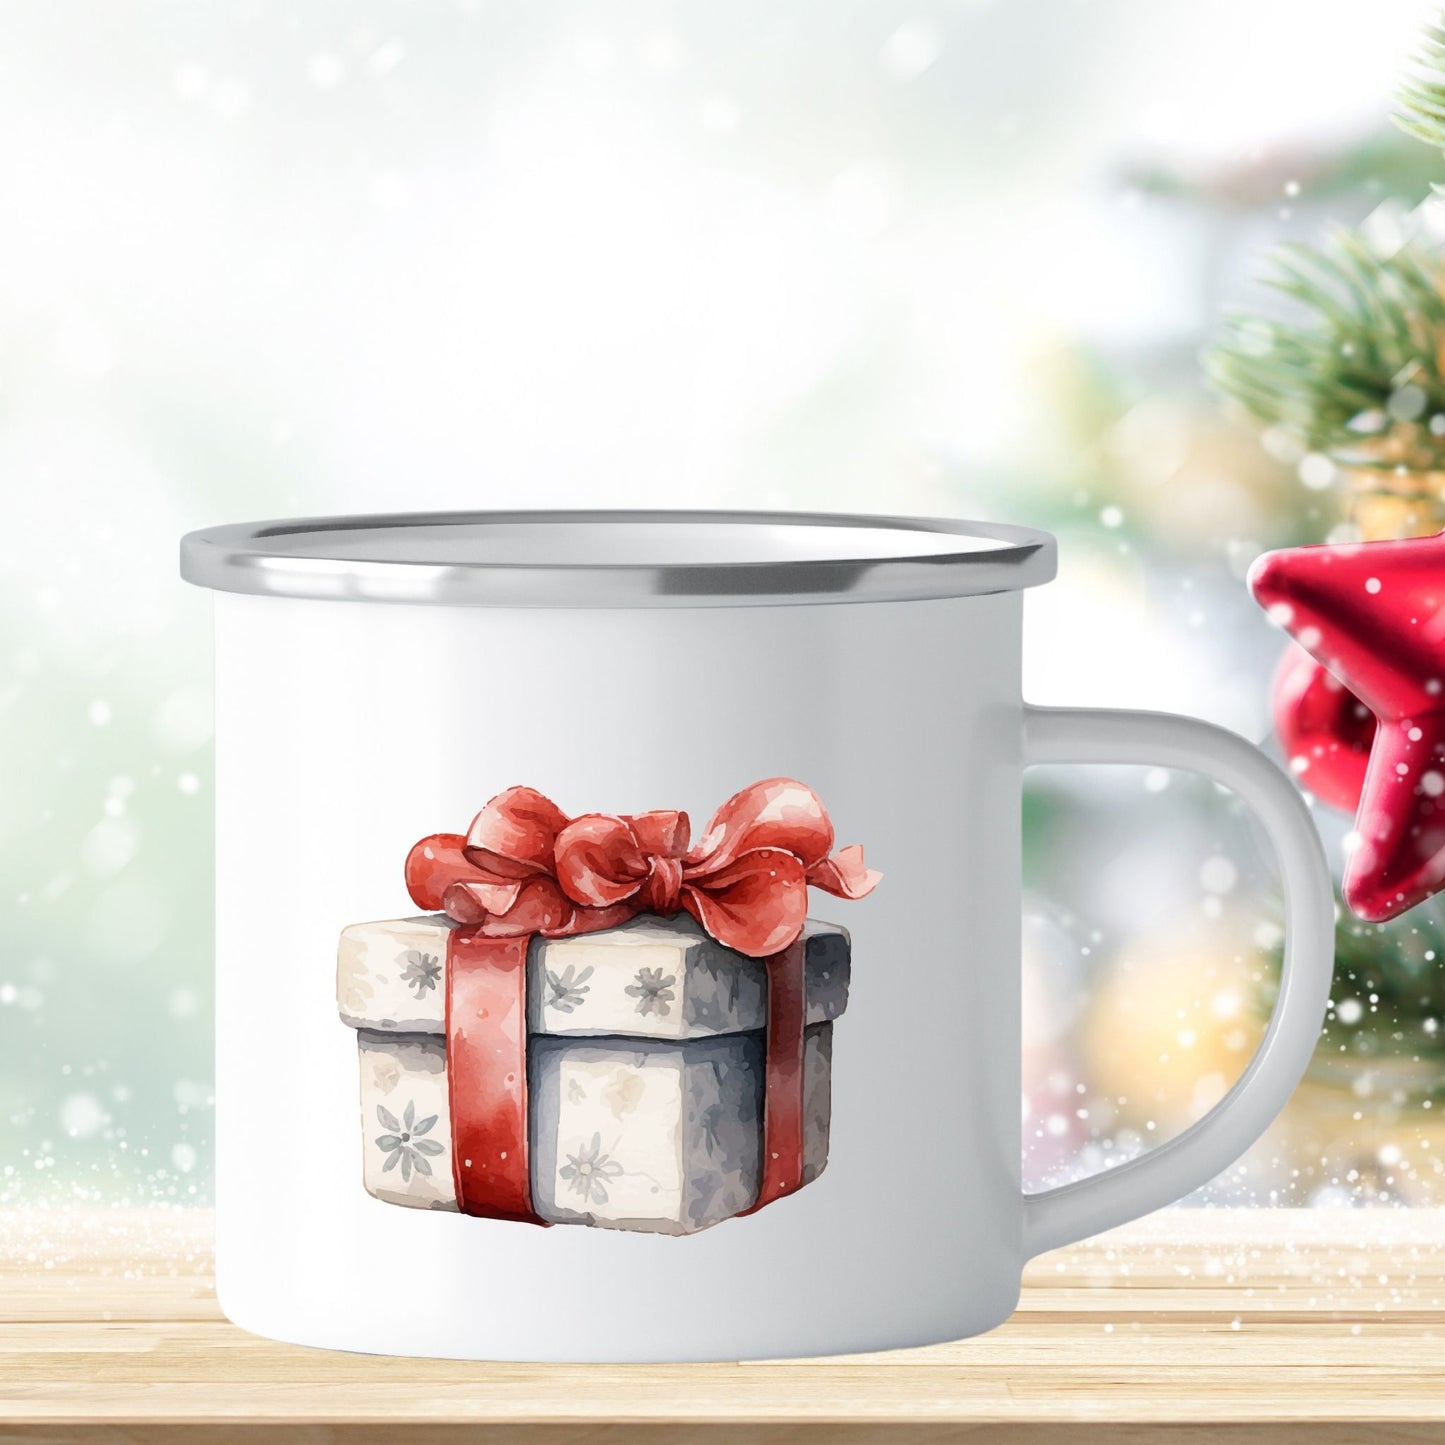 Emaljekrus i hvit farge med en dekorativ sølvkant øverst. Kruset er påført to dekorative julemotiver, en på hver side av koppen. Dette er en lett, uknuselig kopp på 138 gram.  Bildet viser den ene siden av julekruset med et dekorativt julemotiv av en julepakke.